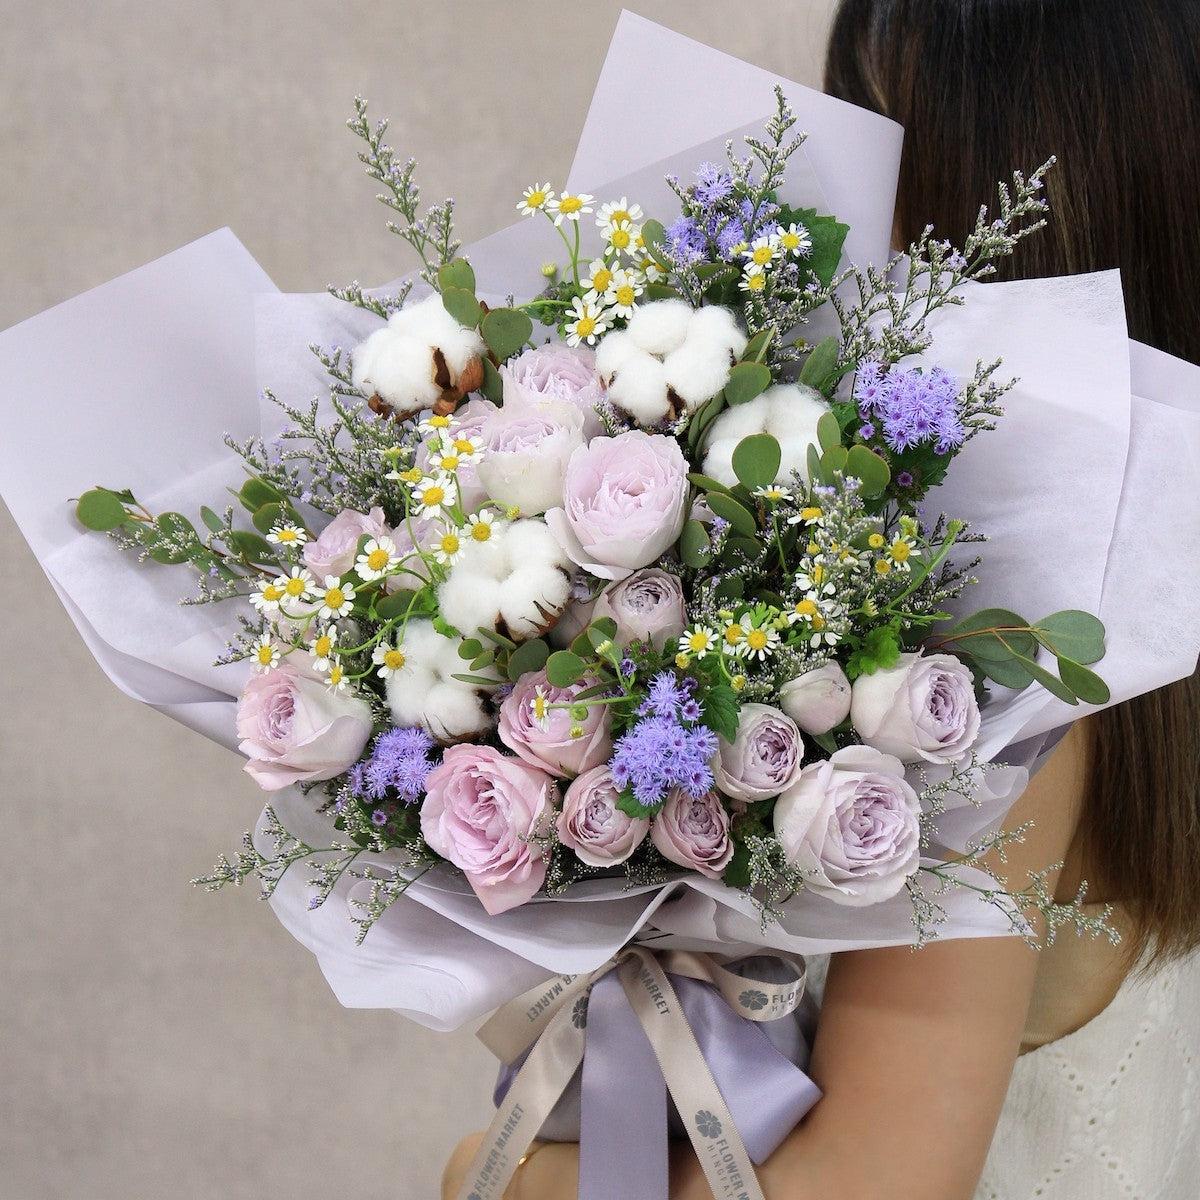 紫色小玫瑰棉花花束 Purple spray rose and cotton bouquet